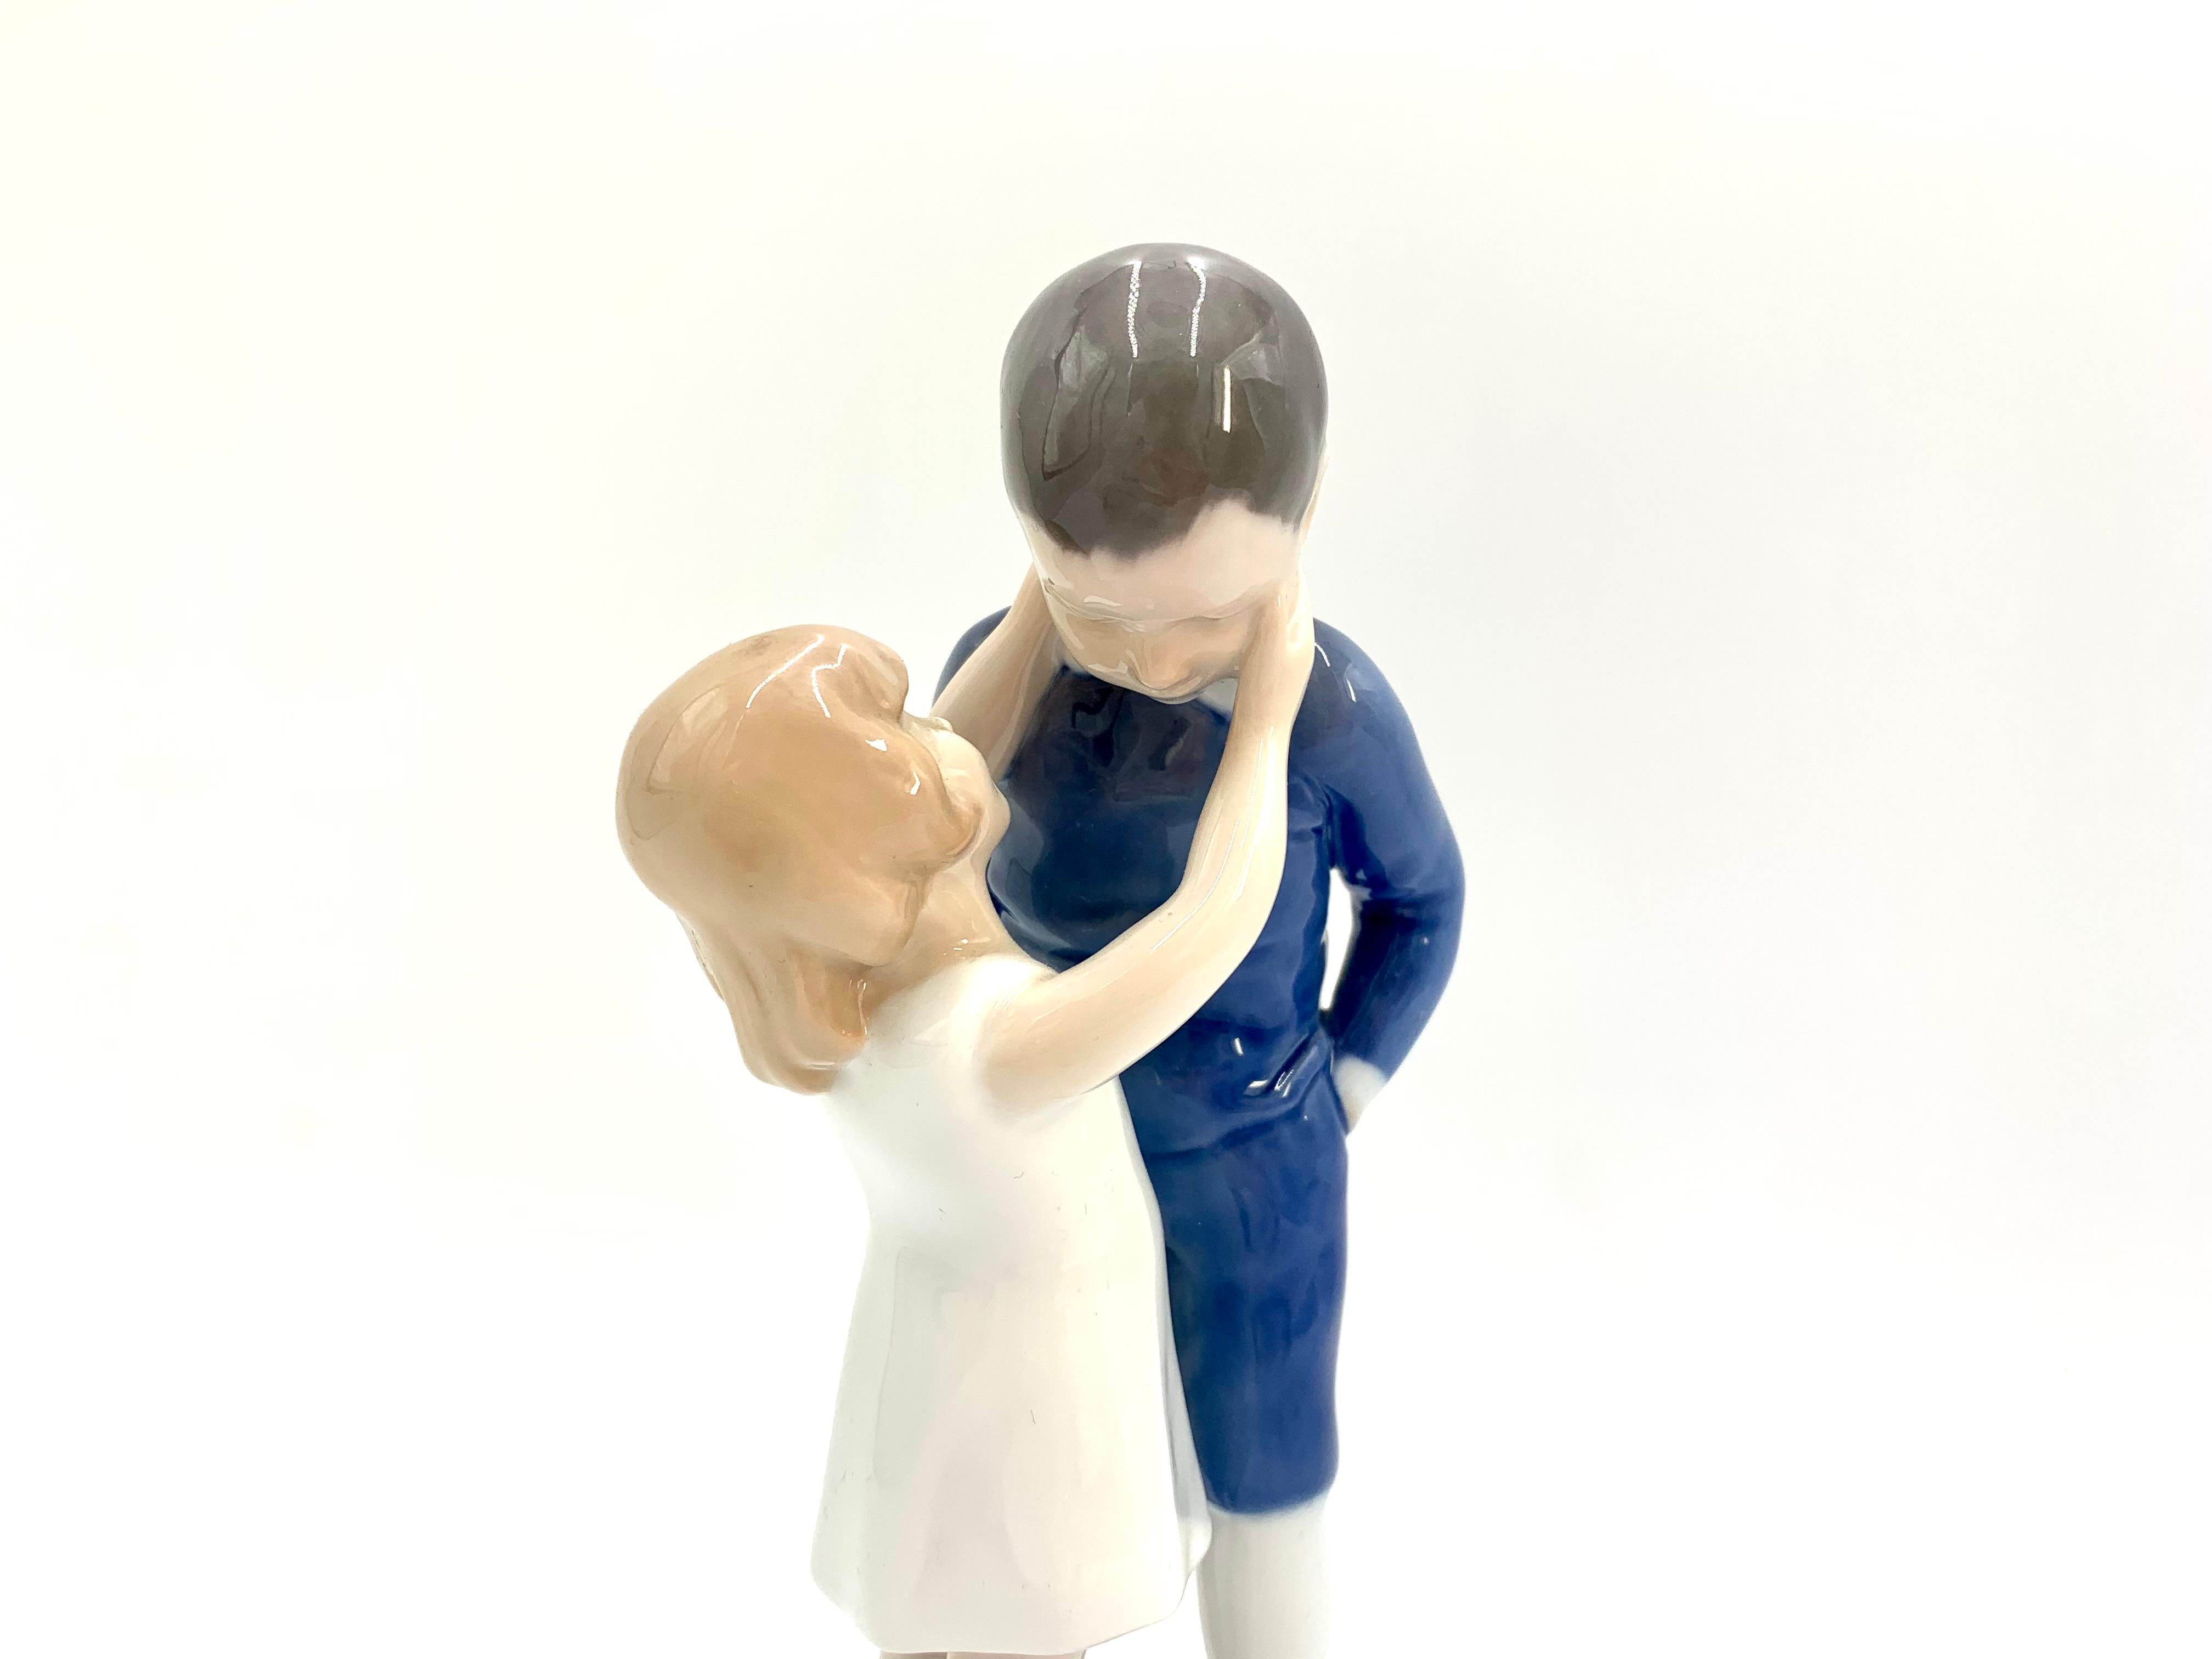 Porzellanfigur eines Mädchens mit einem Jungen

Hergestellt in Dänemark von Bing & Grondahl

Produziert in den Jahren 1960-70

Modellnummer # 1781

Sehr guter Zustand, keine Schäden

Maße: Höhe 21 cm, Durchmesser 8,5 cm.